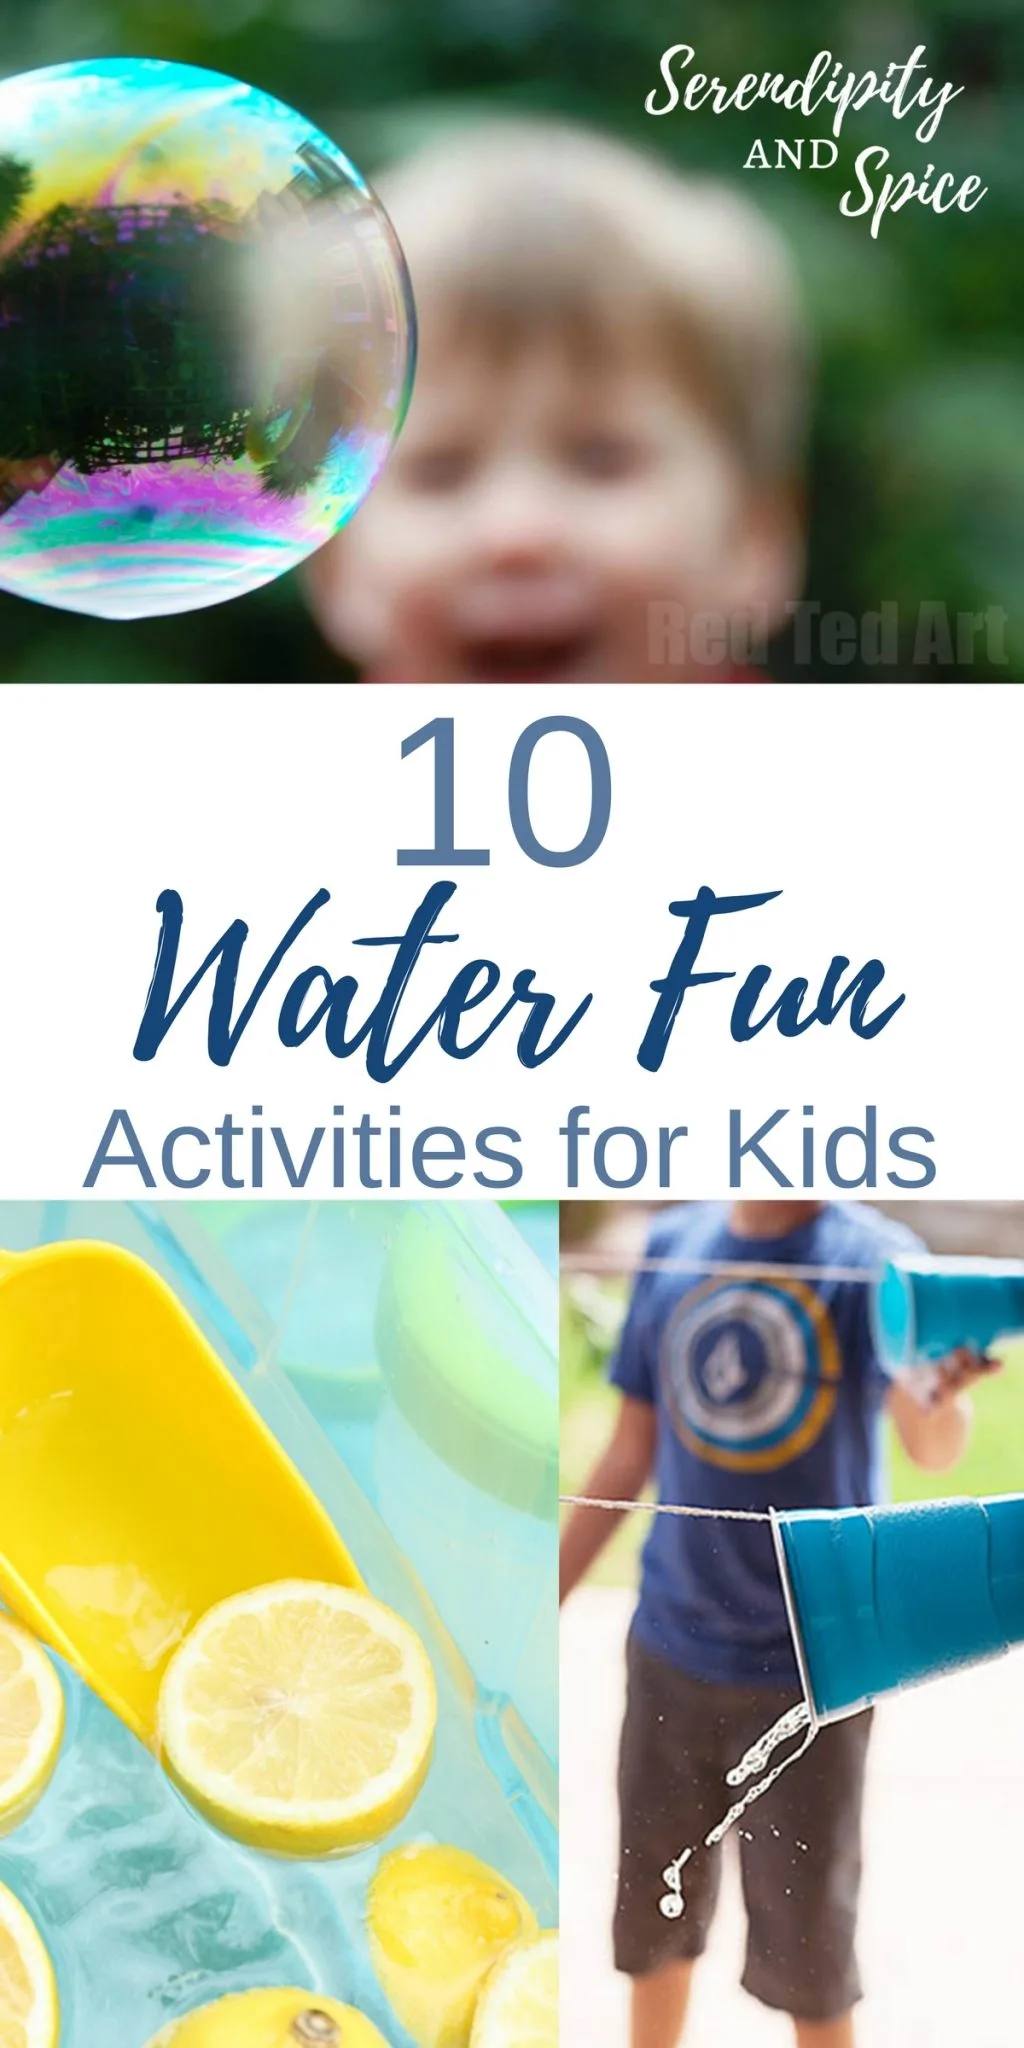 Water Fun Activities